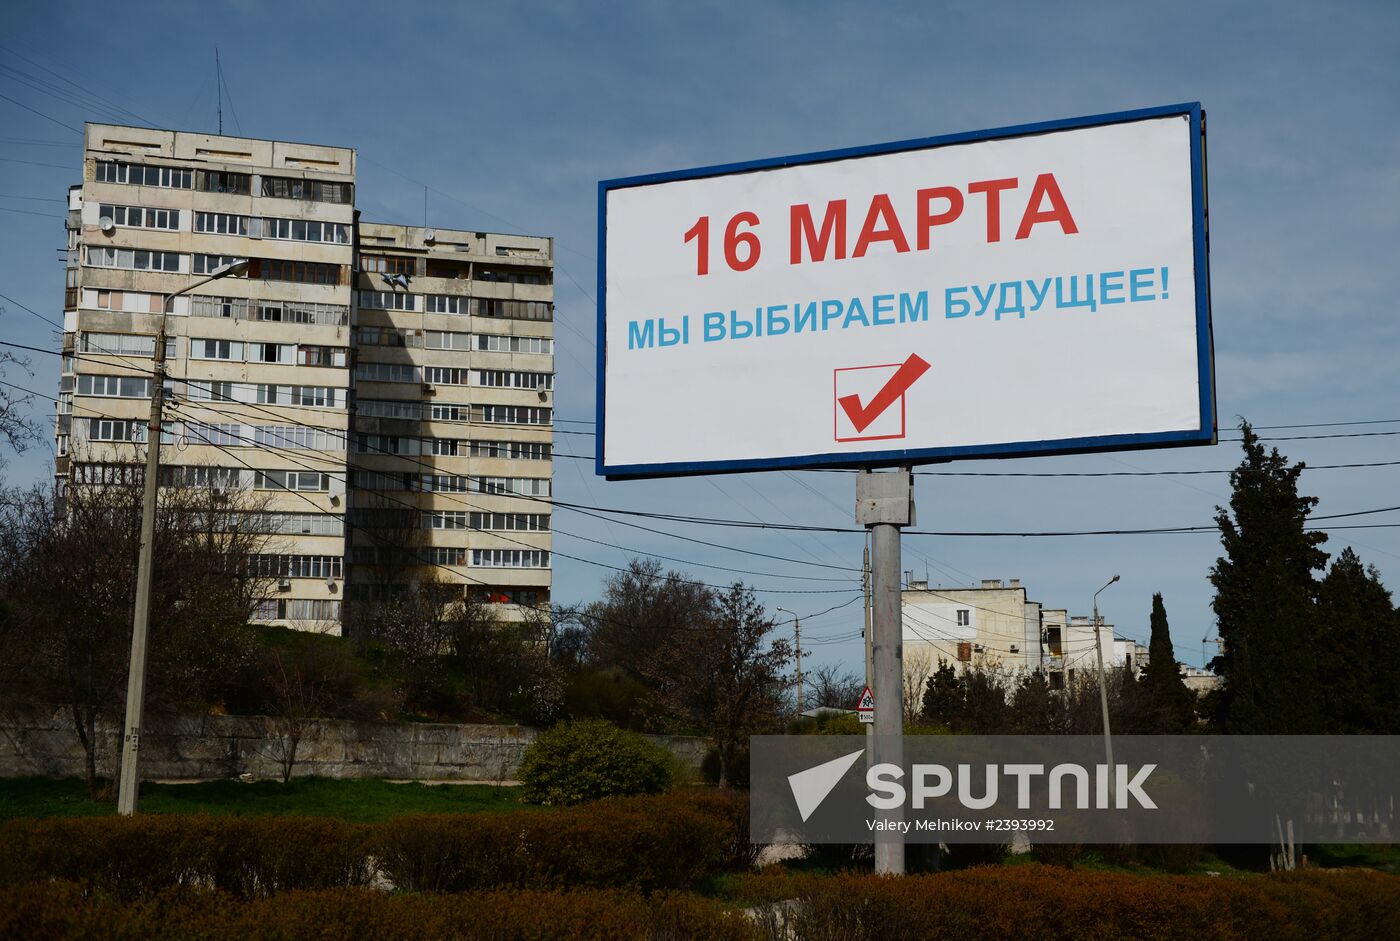 Street placards in Sevastopol